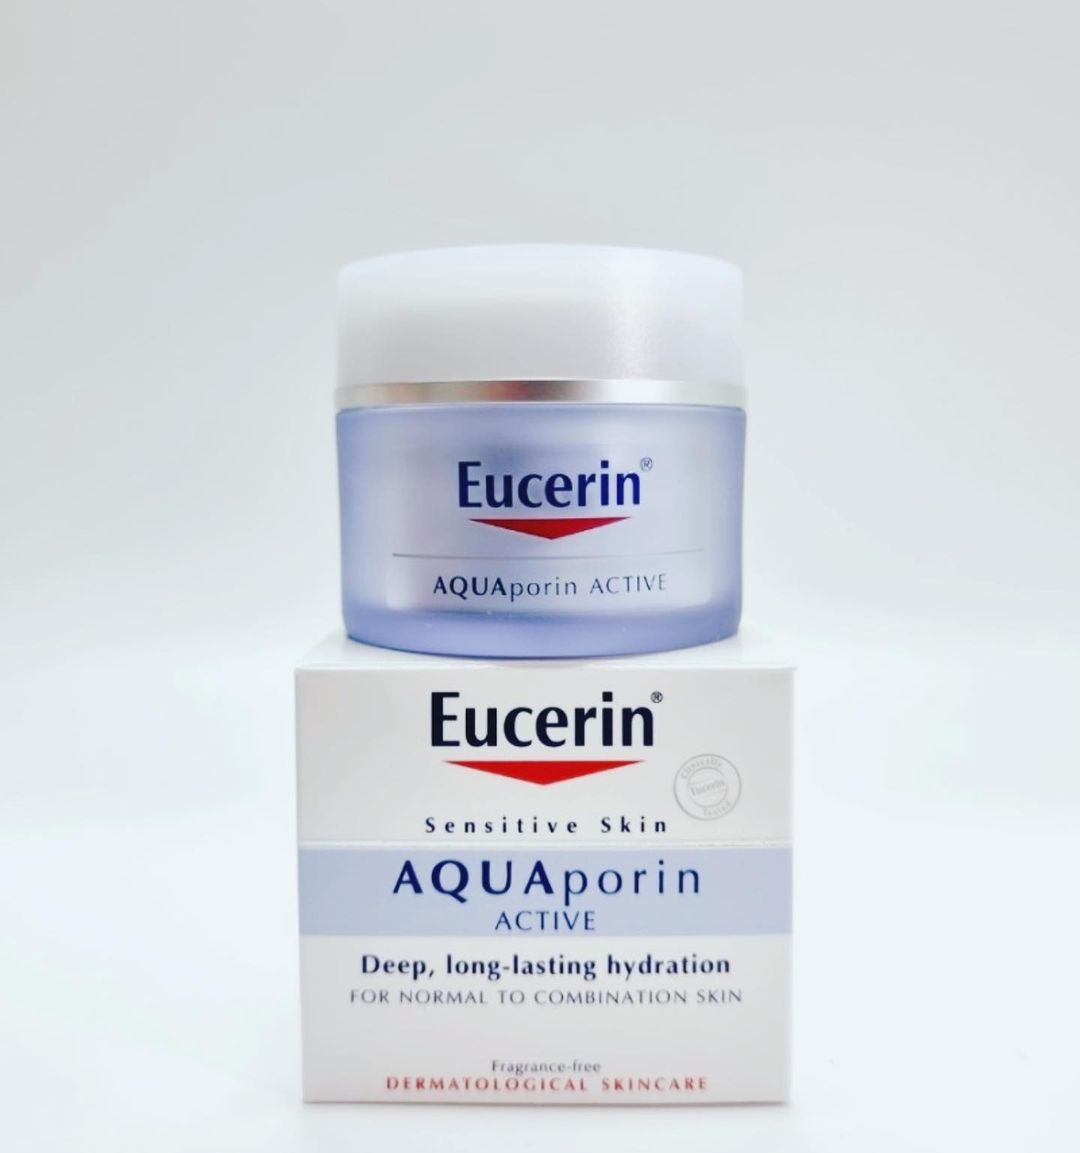 Eucerin AquaPorin Active - справжній скарб для комбінованої шкіри